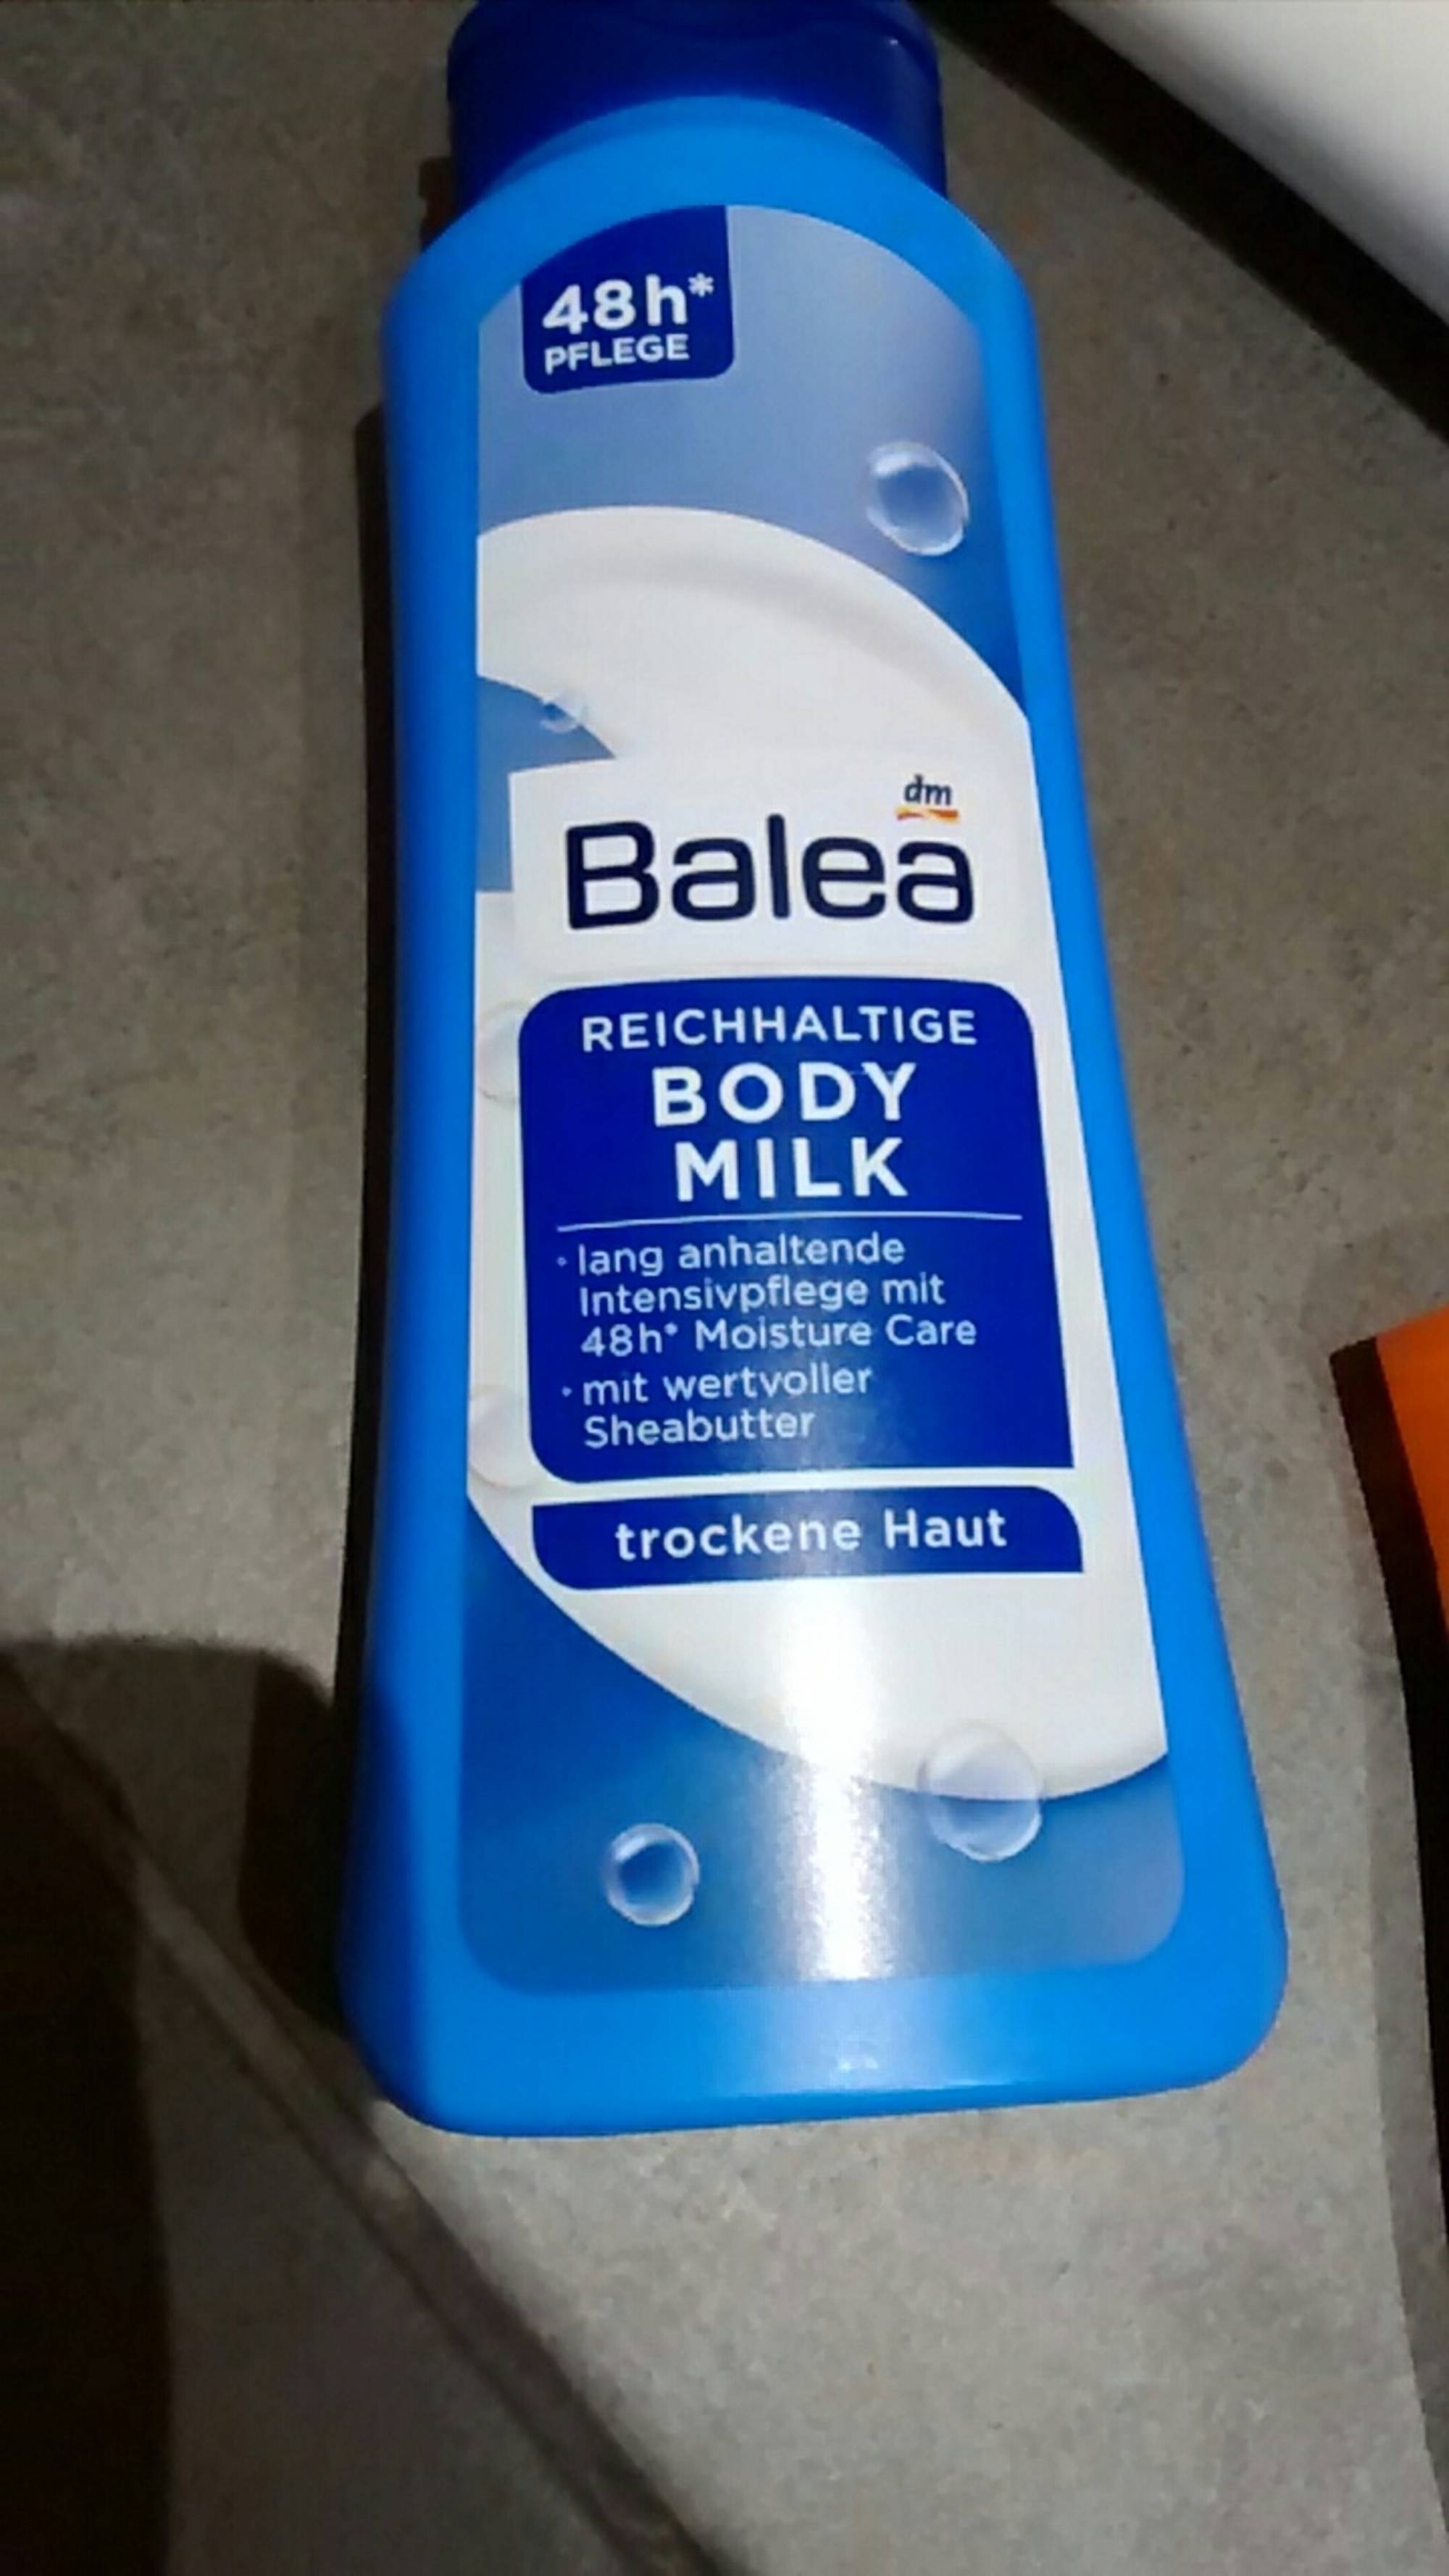 BALEA - Reichhaltige body milk